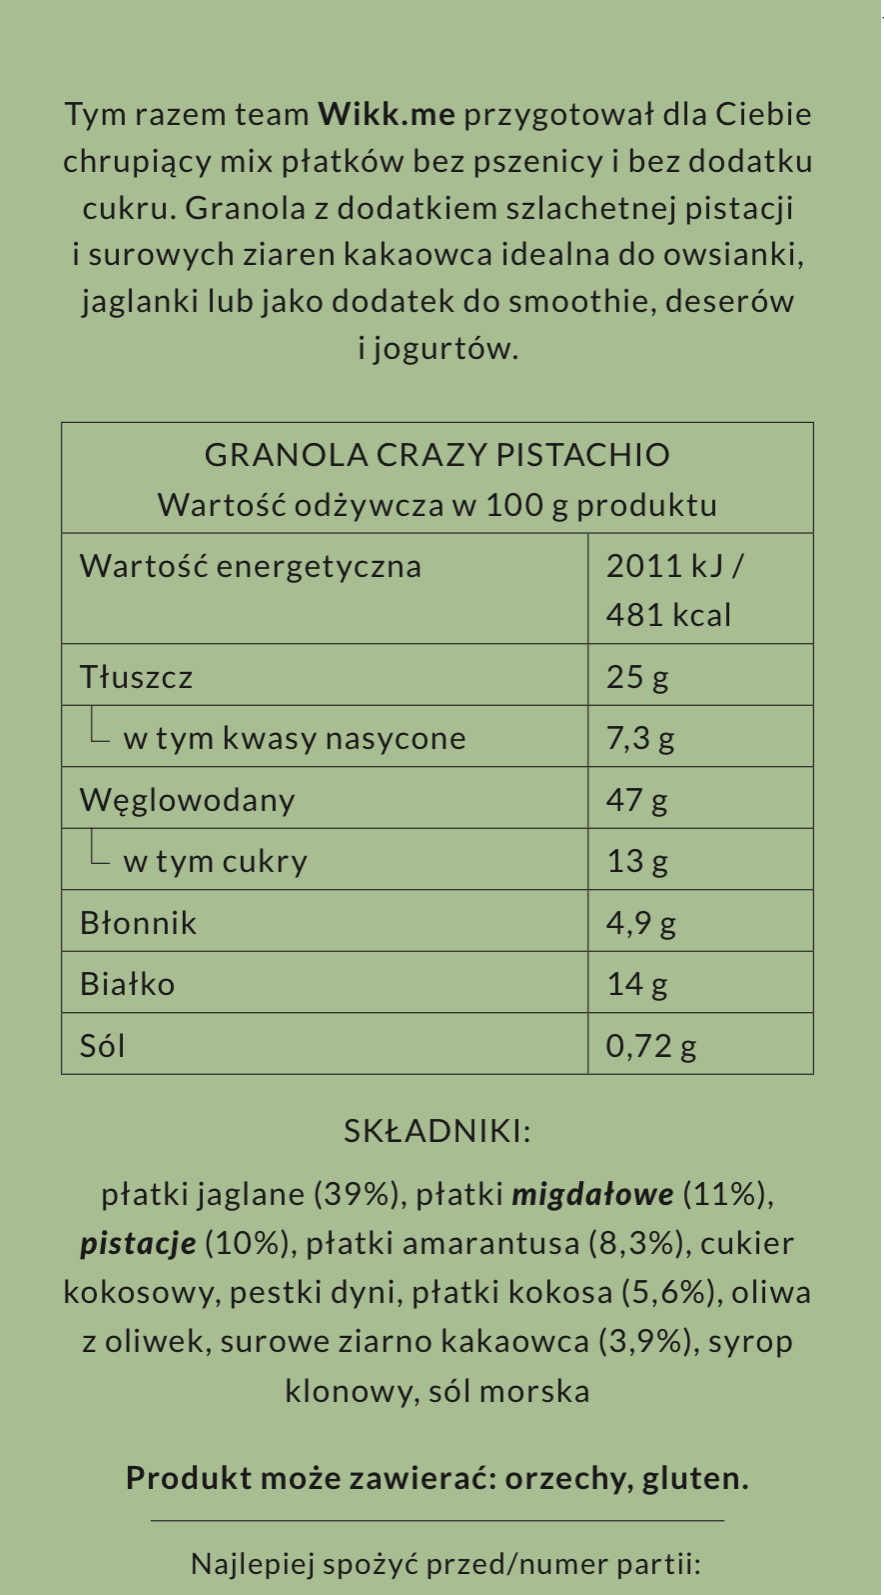 Crazy Pistachio Granola